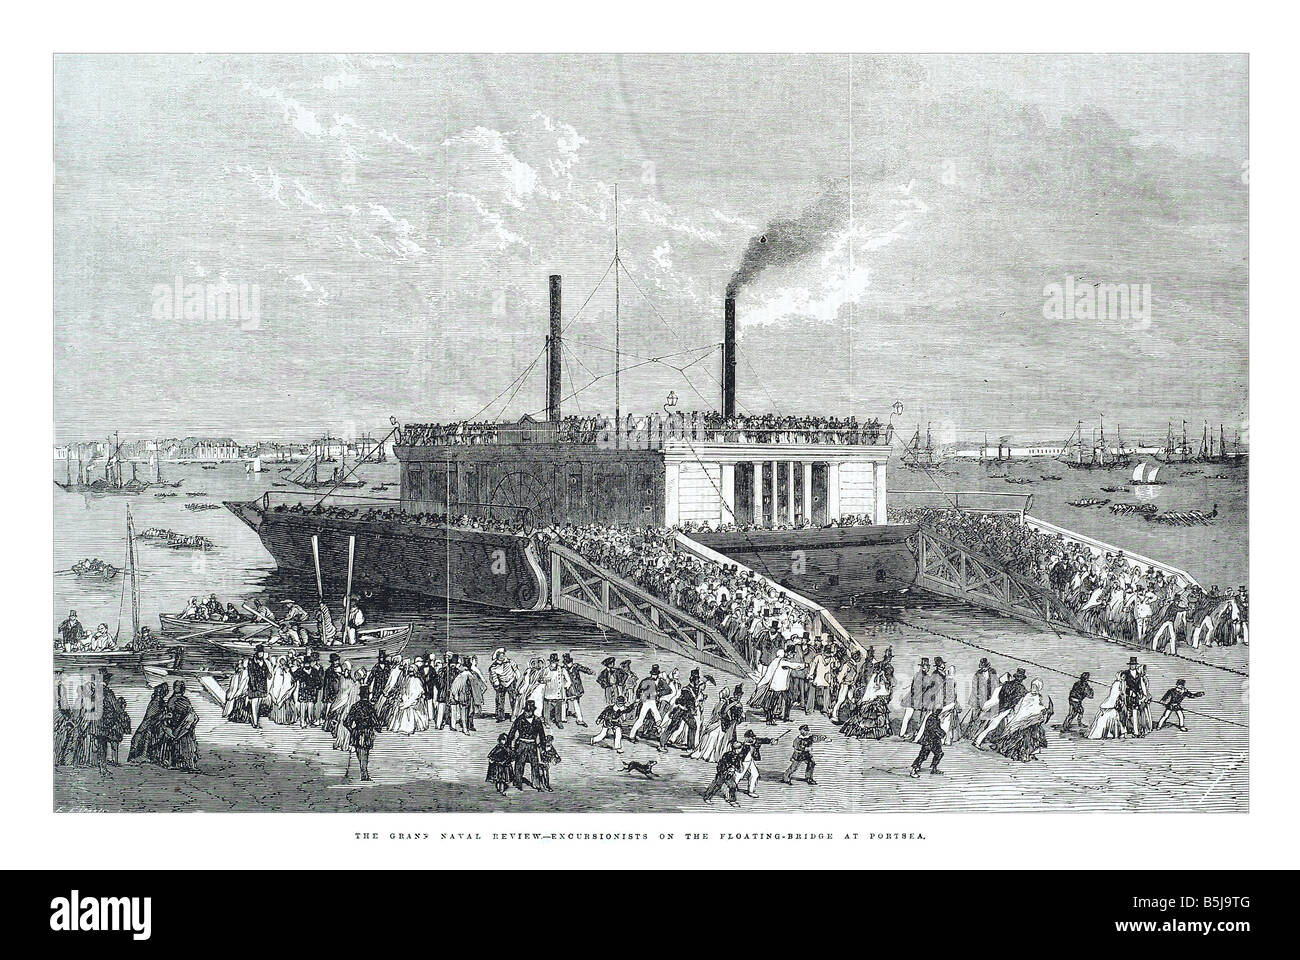 Das Grand Marine überprüfen Ausflügler auf die schwimmende Brücke in Portsea 26. April 1856 die Illustrated London News-Seite 448 Stockfoto